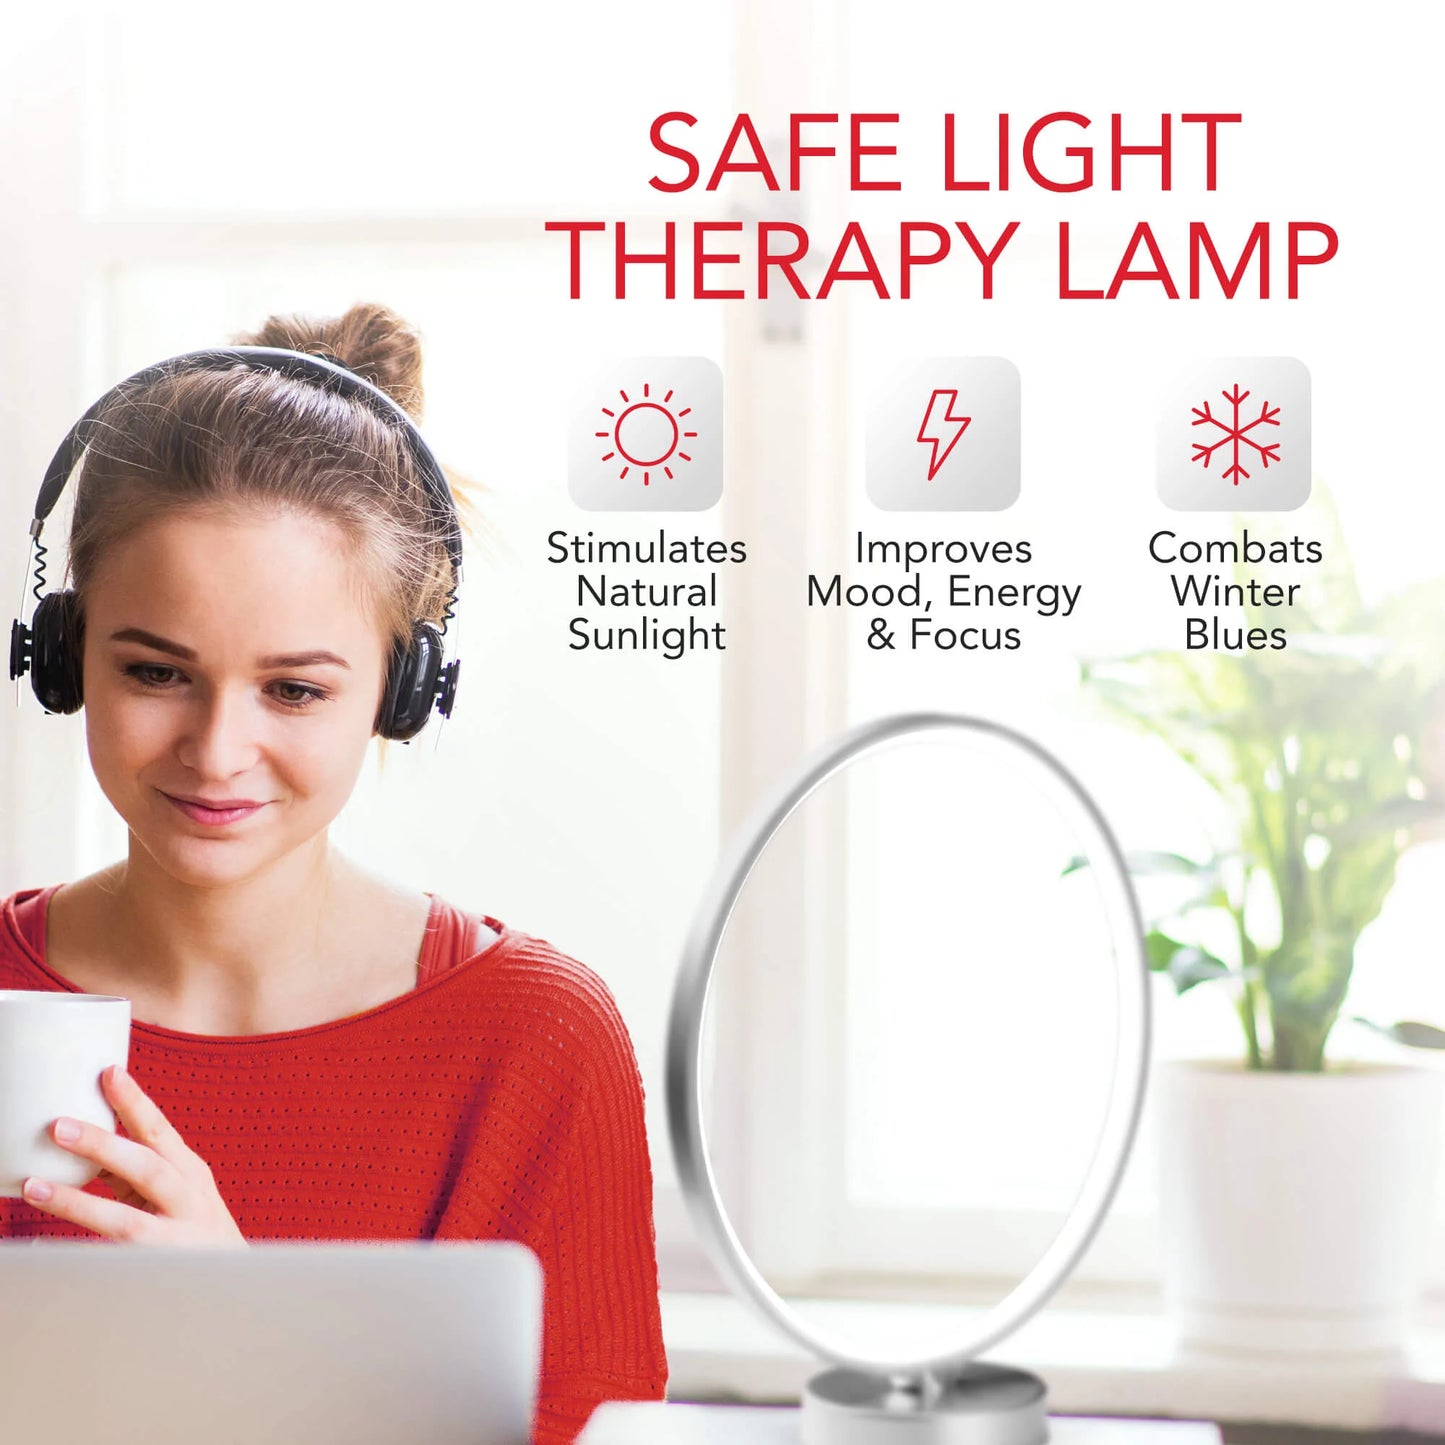 Kala Therapy Lamp For Seasonal Affective Disorder (SAD)*